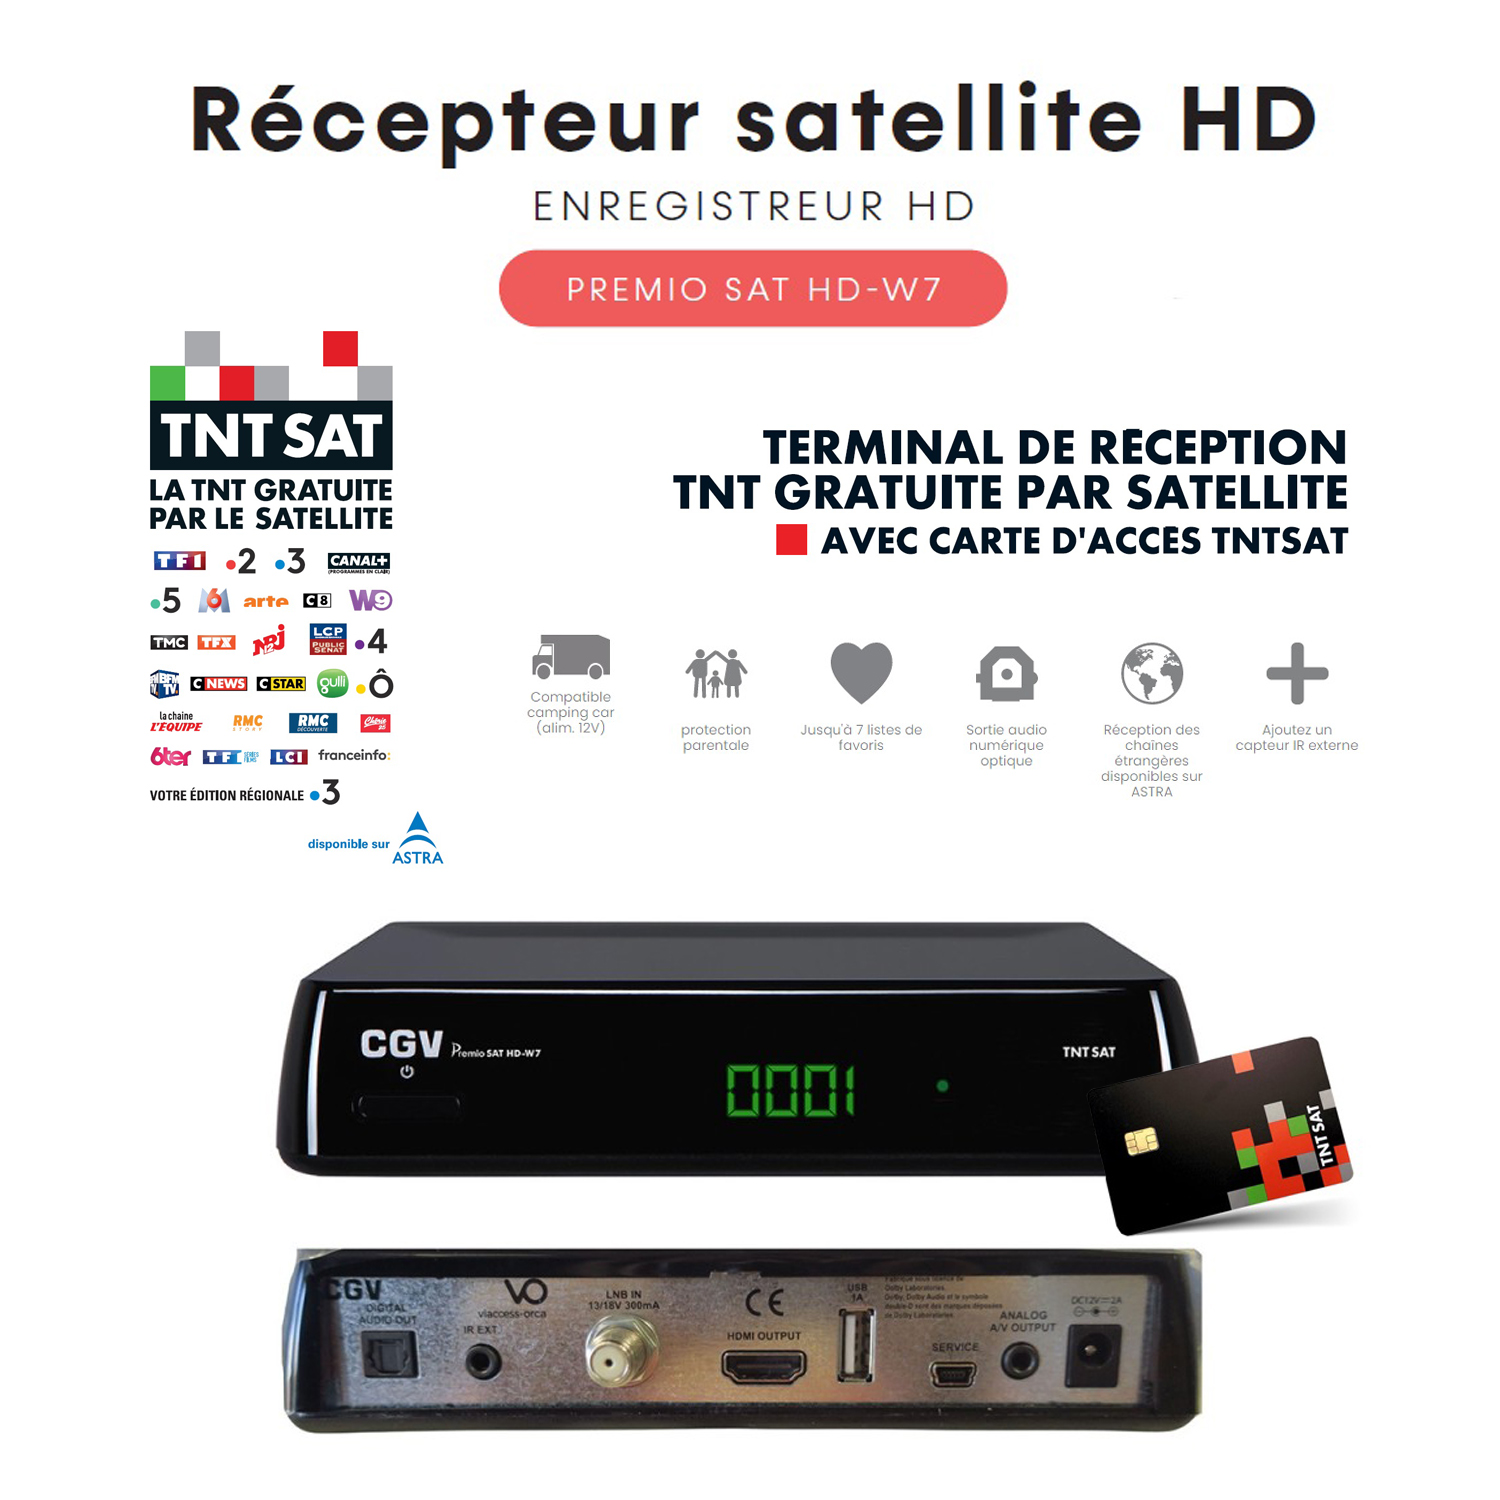 Récepteur Satellite HD CGV PREMIO SAT HD W7 TNTSAT - Contrôle du direct, Timer, Enregistreur, 12V, chaînes étrangères TNT sur ASTRA